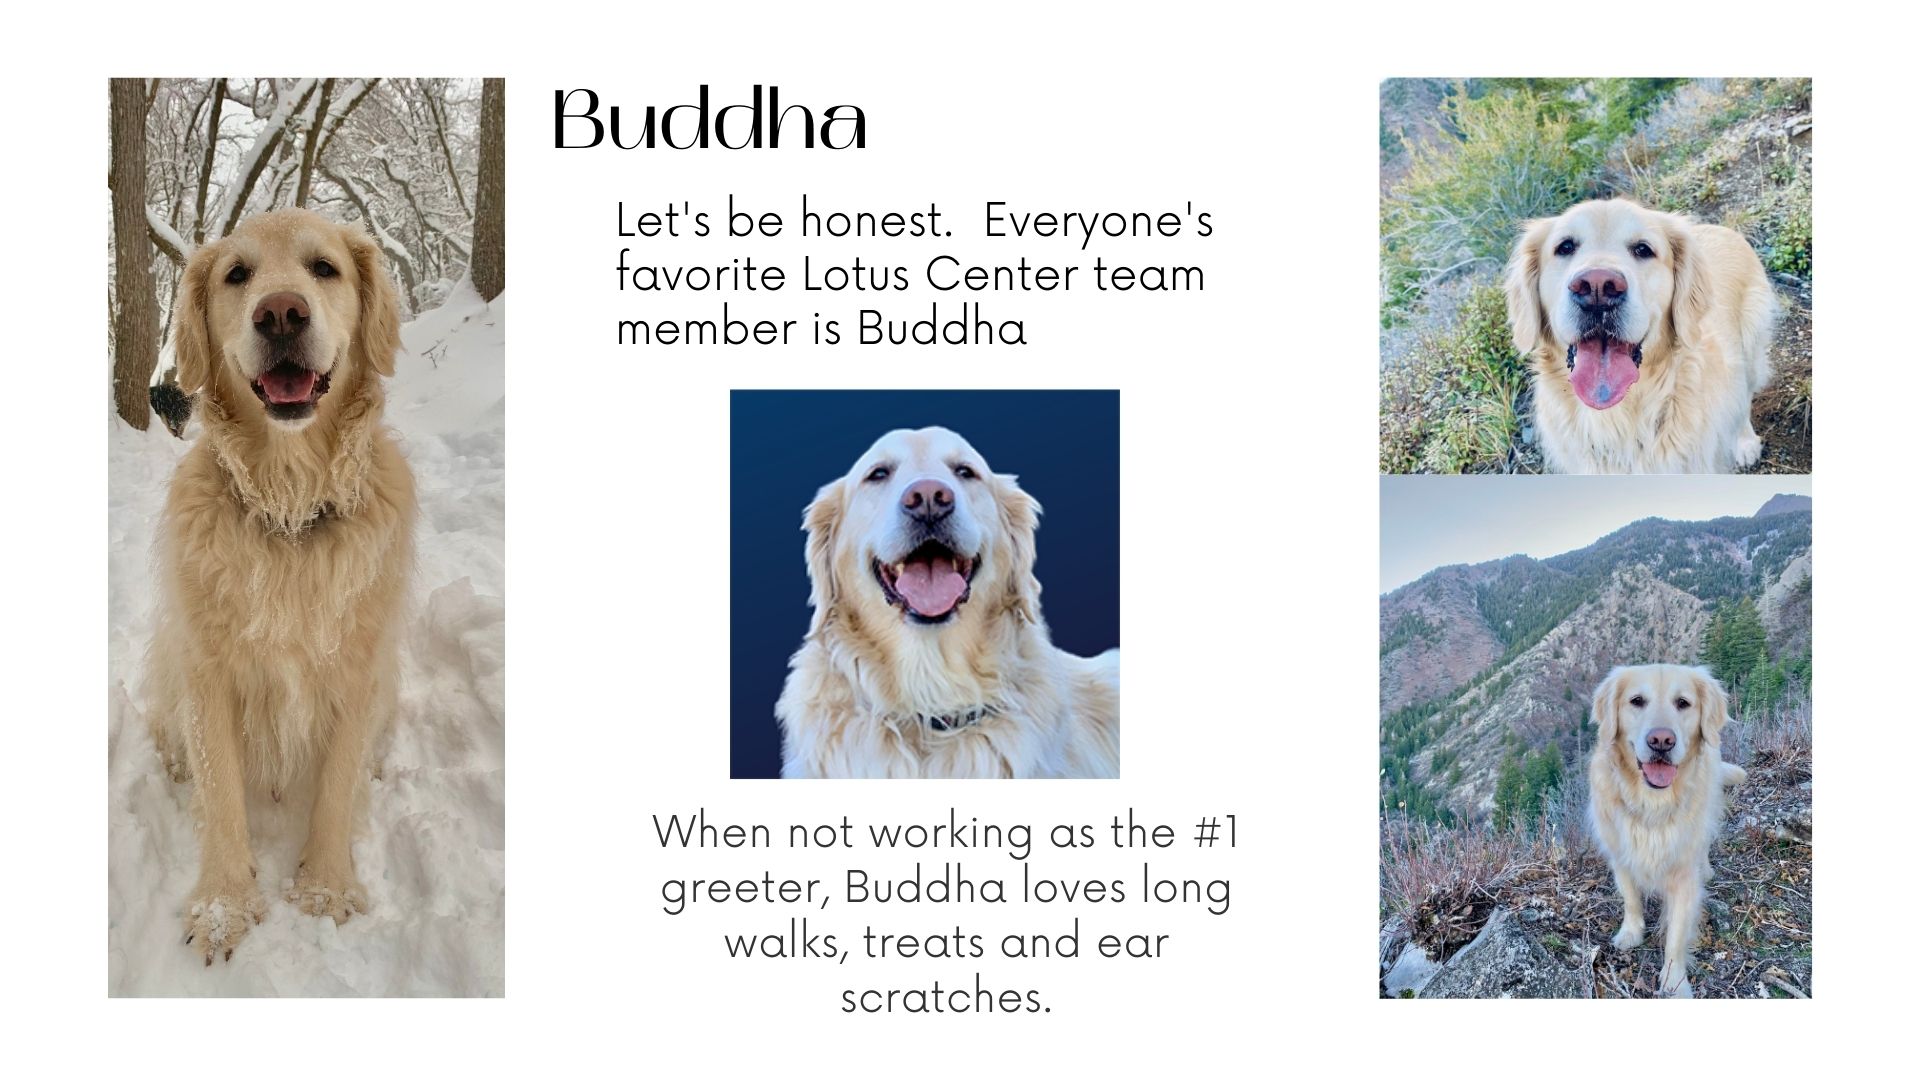 Buddha the dog